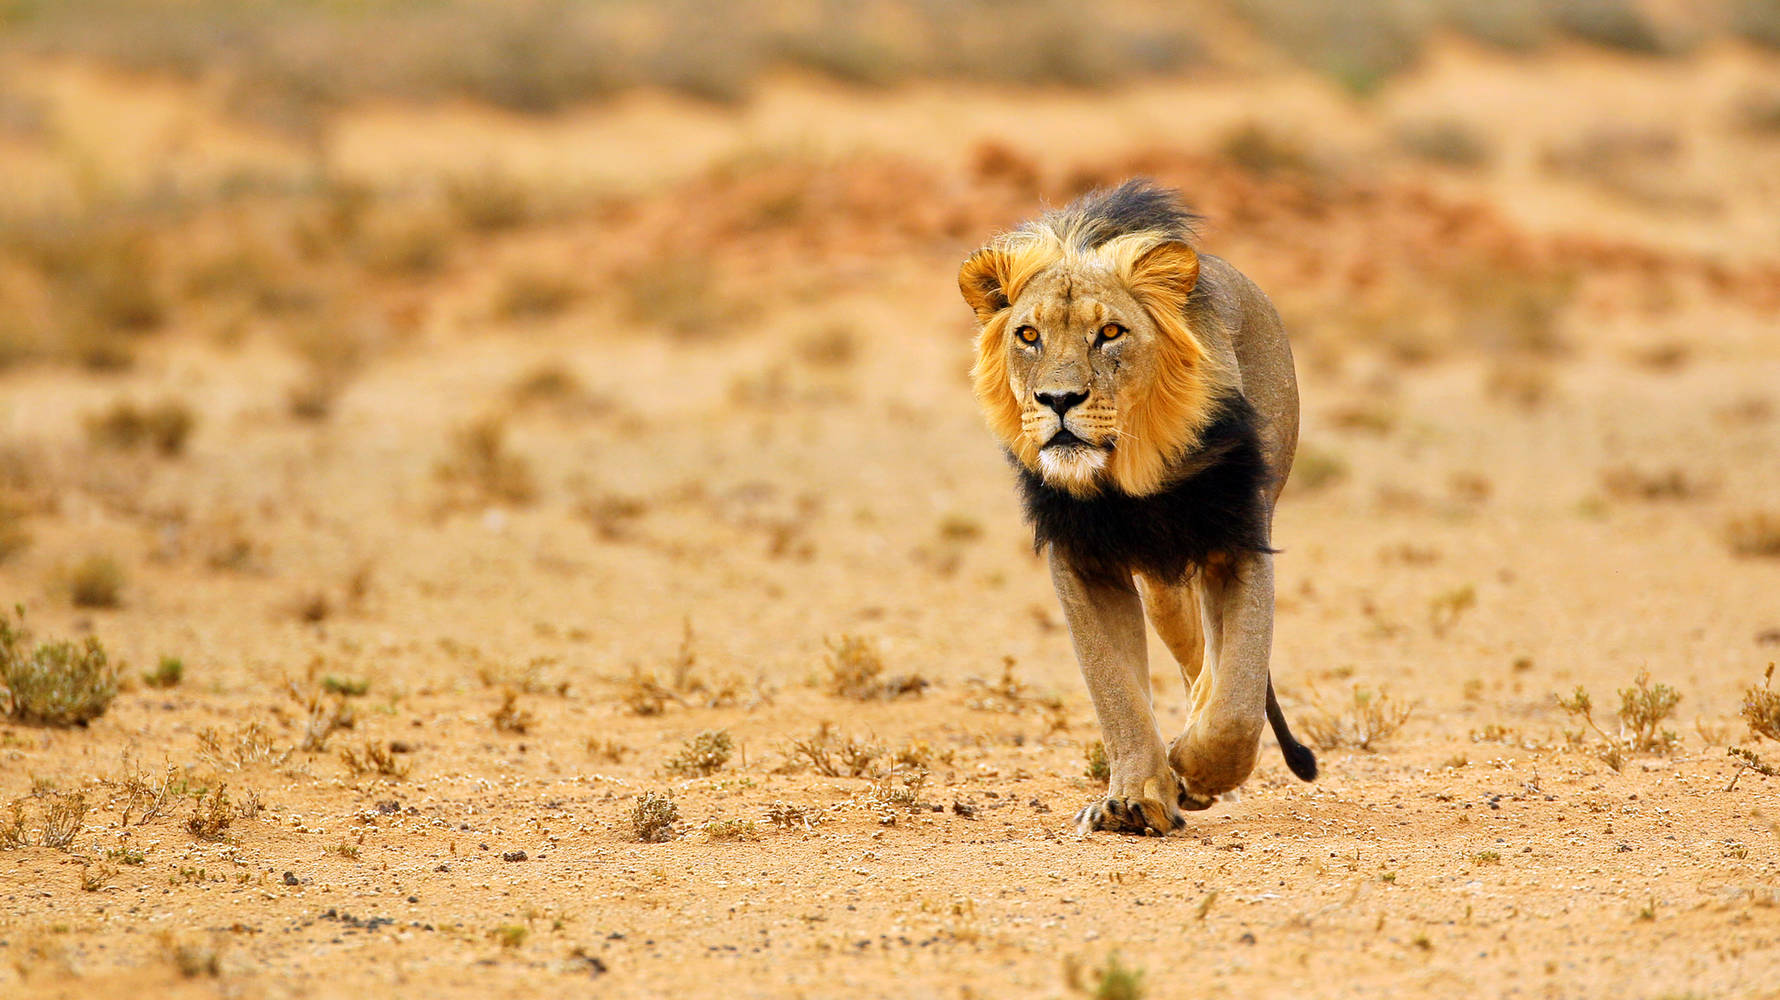 shutterstock_175620494_-_lion_walking_in_kalahari